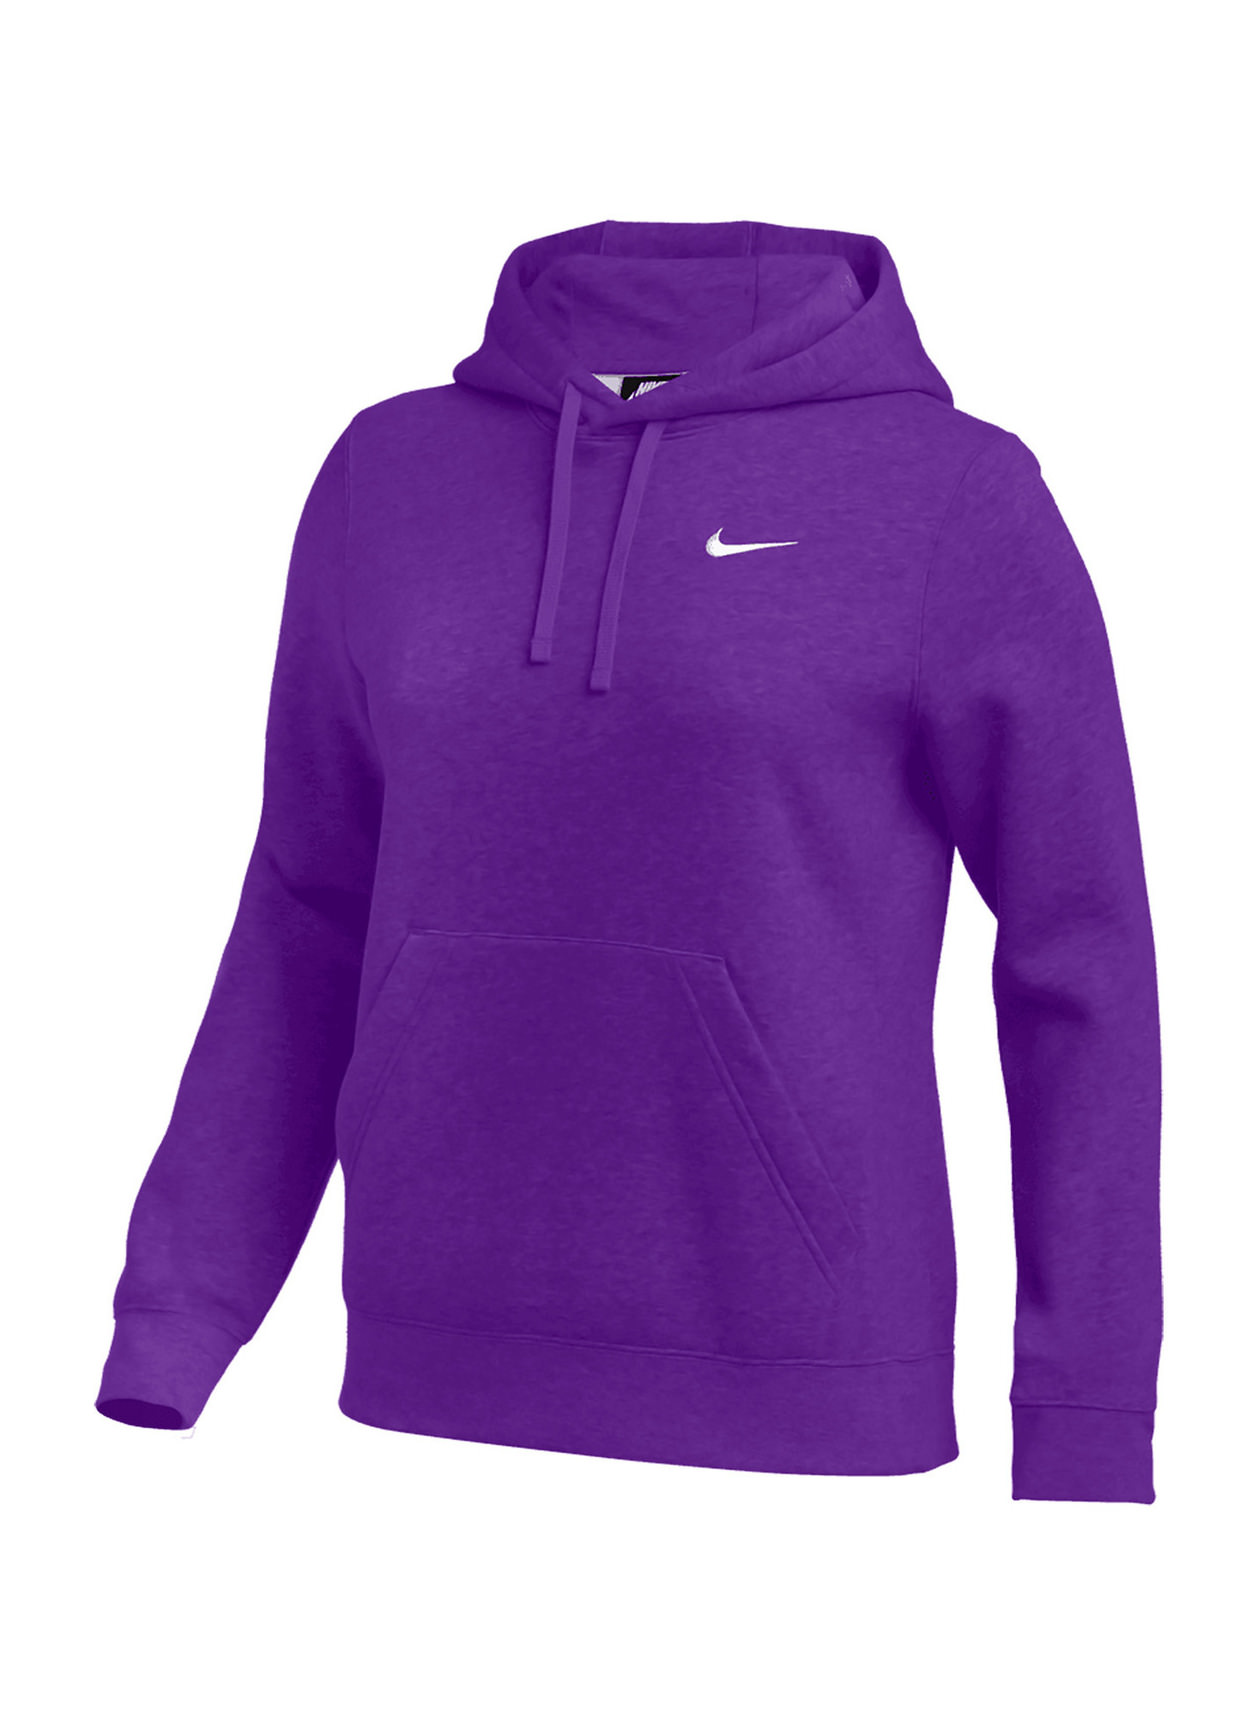 Nike Women's Team Purple / White Club Training Hoodie